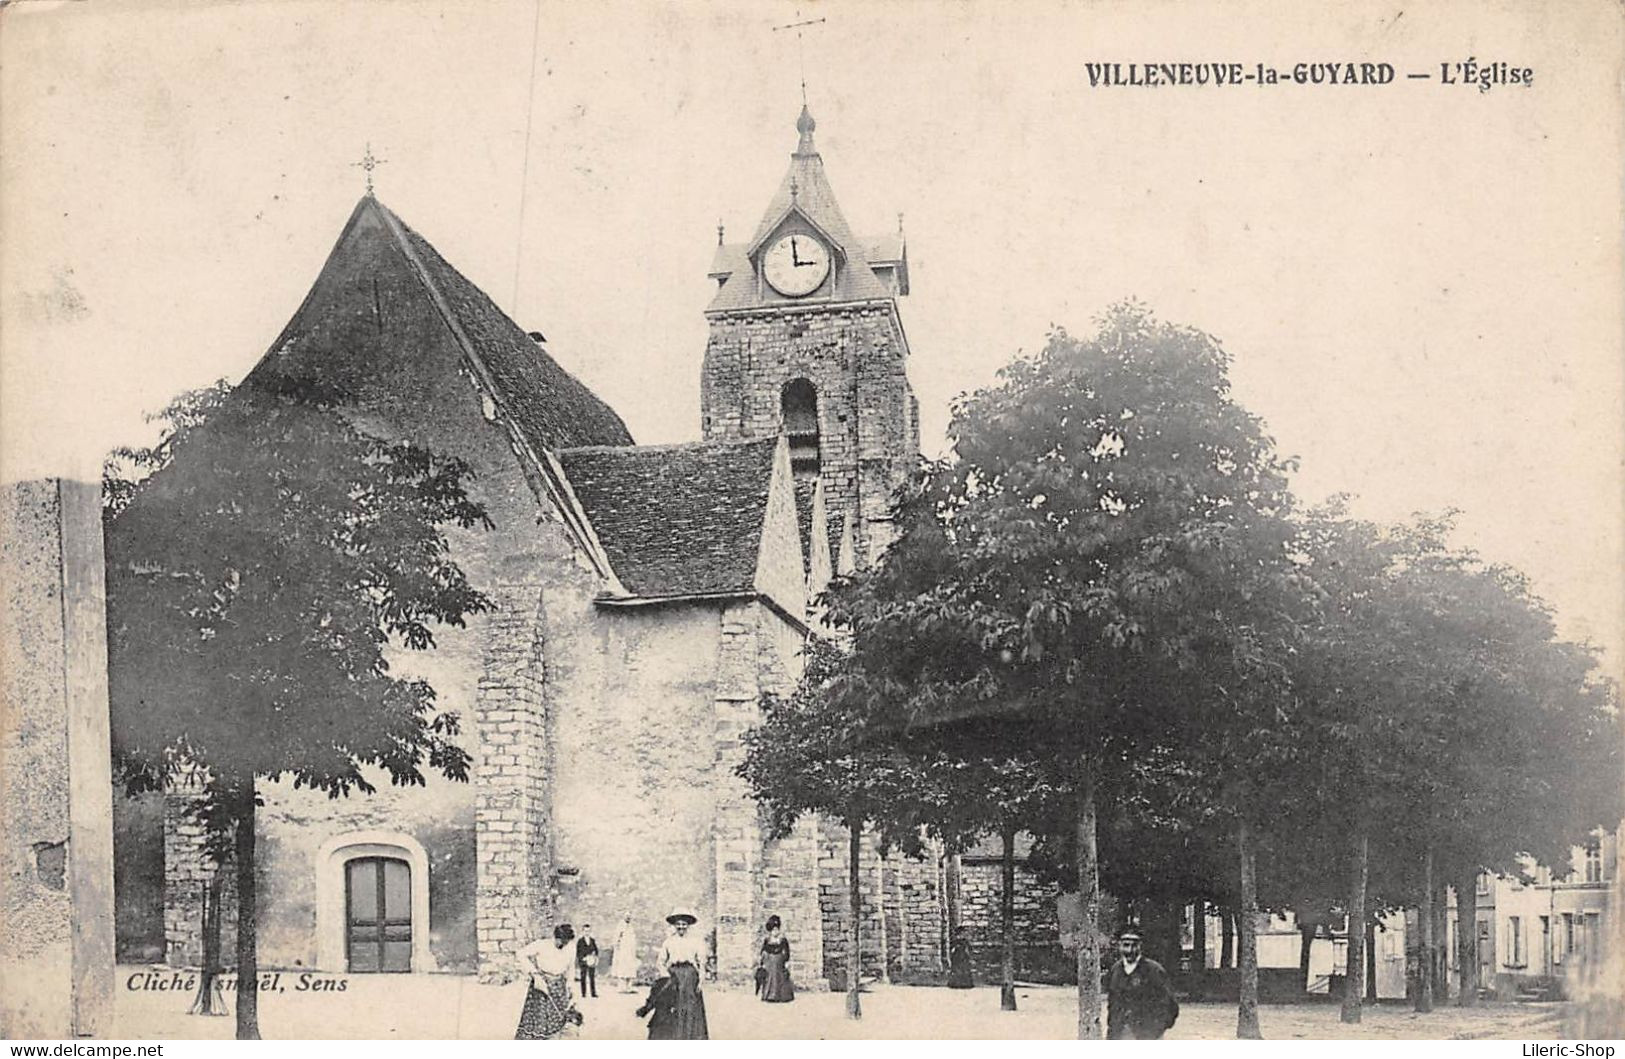 [89] VILLENEUVE-LA-GUYARD. - L'Église -  ± 1910 - Cliché Ismaël, Sens CPA - Villeneuve-la-Guyard